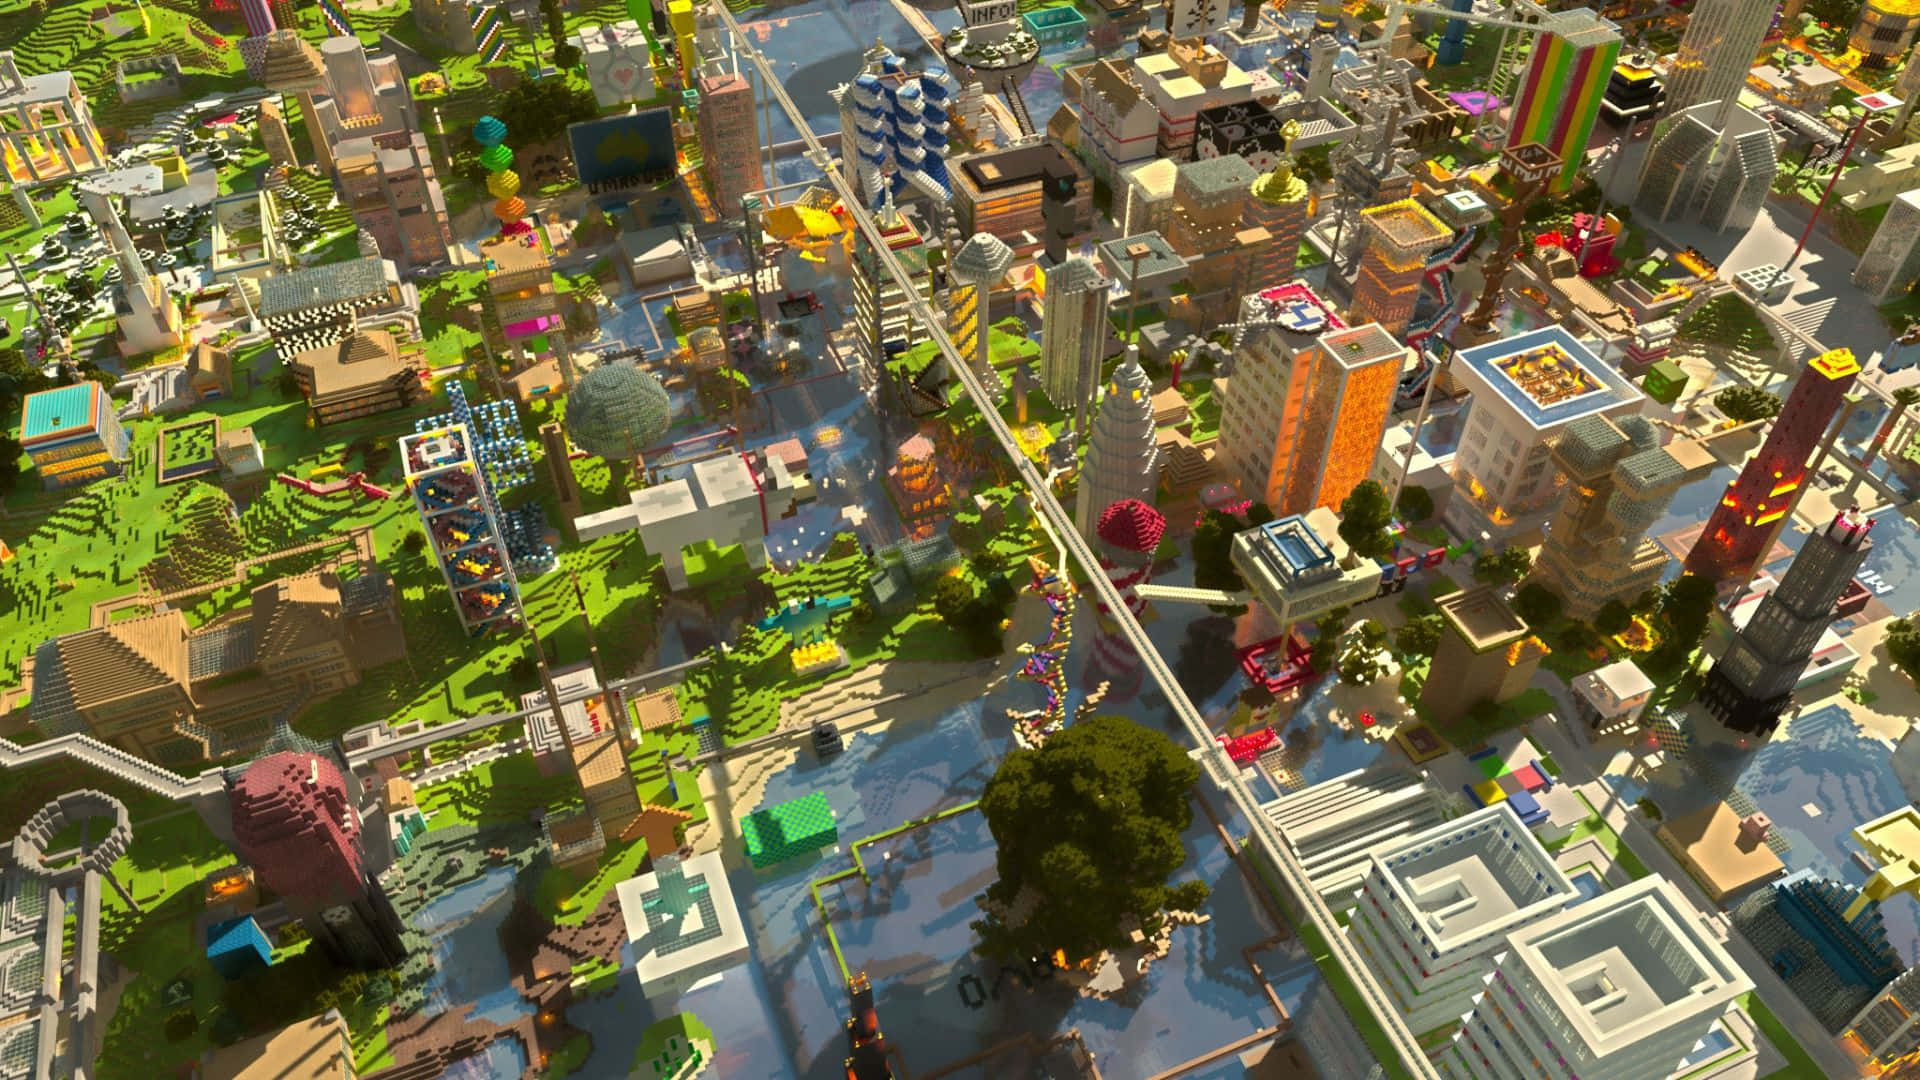 Impresionantepaisaje Urbano De Minecraft Durante La Noche. Fondo de pantalla